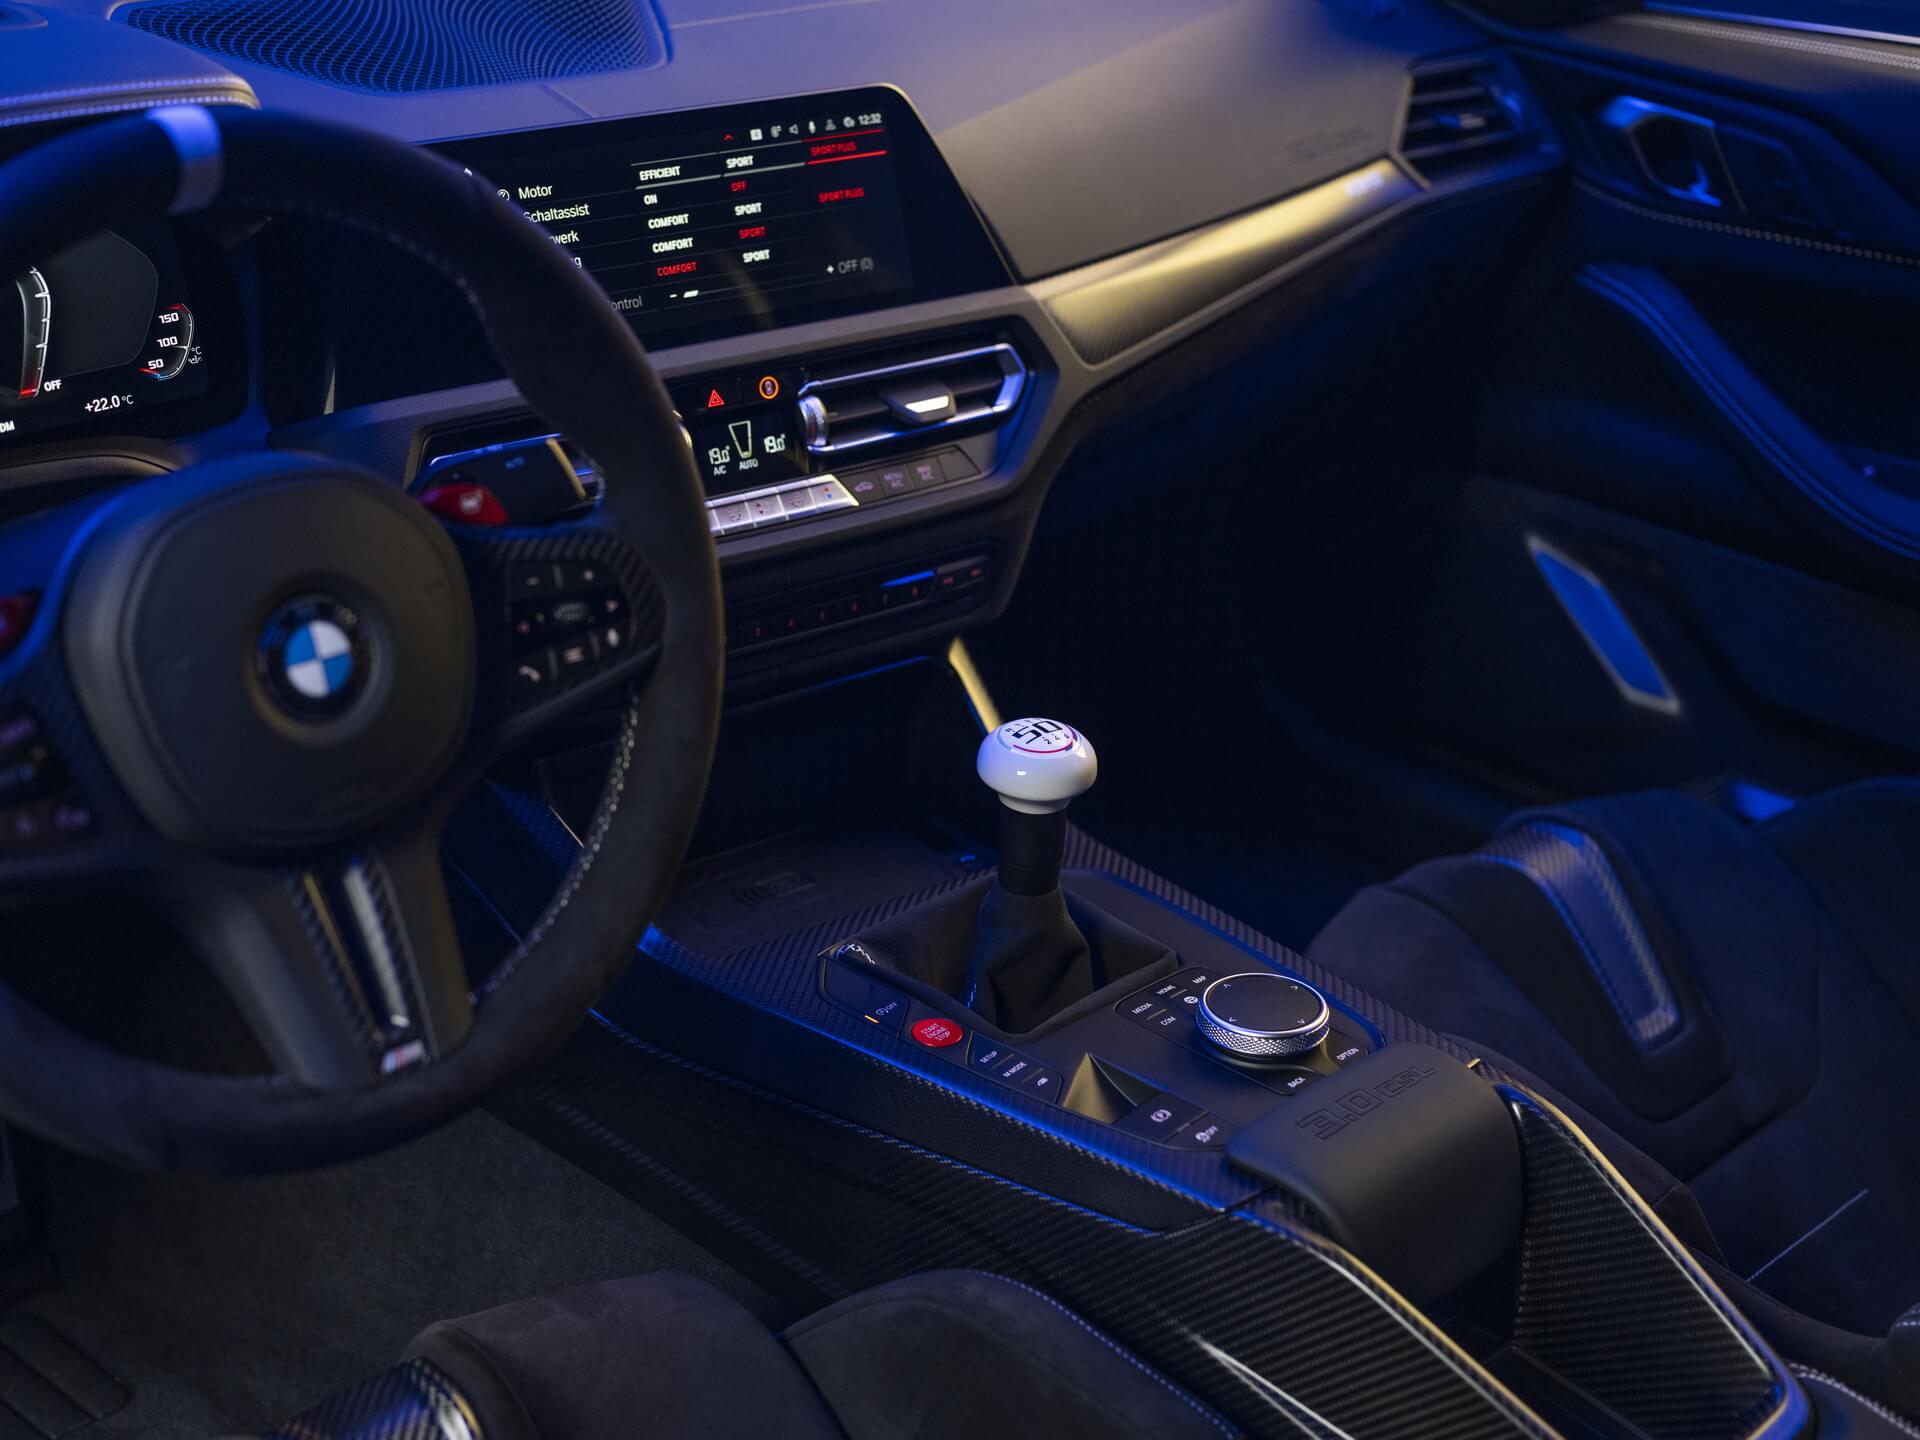 BMW 3.0 CSL pormenor caixa de velocidades